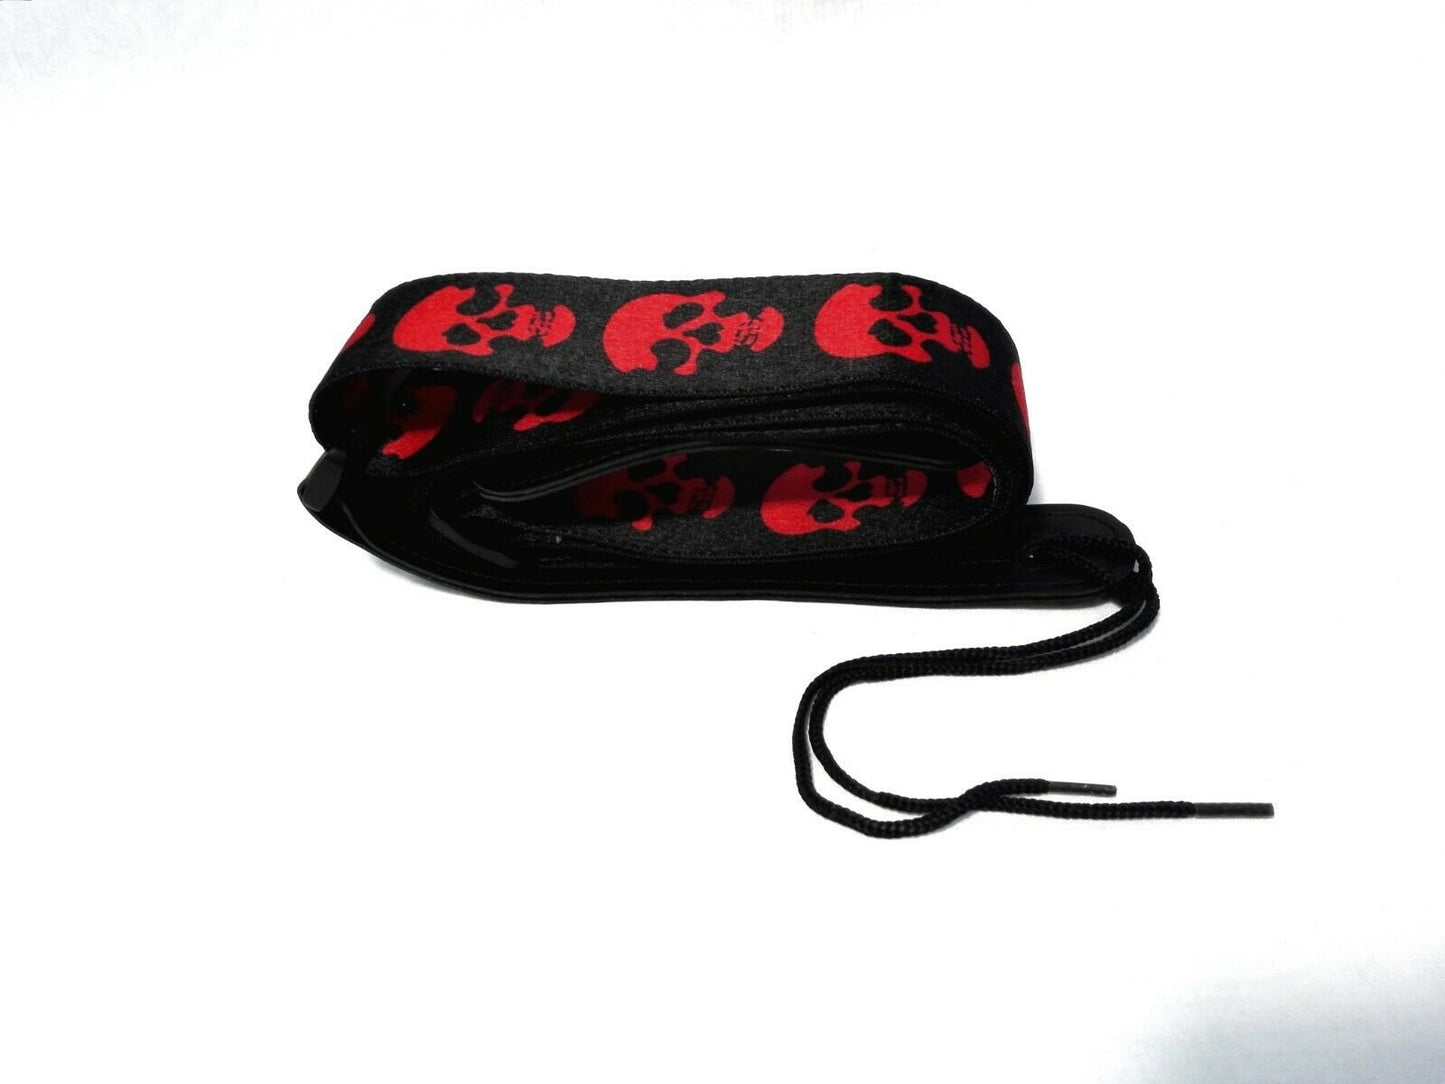 Long PU Leather End Guitar Strap, Length Adjustable 103~170cm, "Red Skull", GSRED